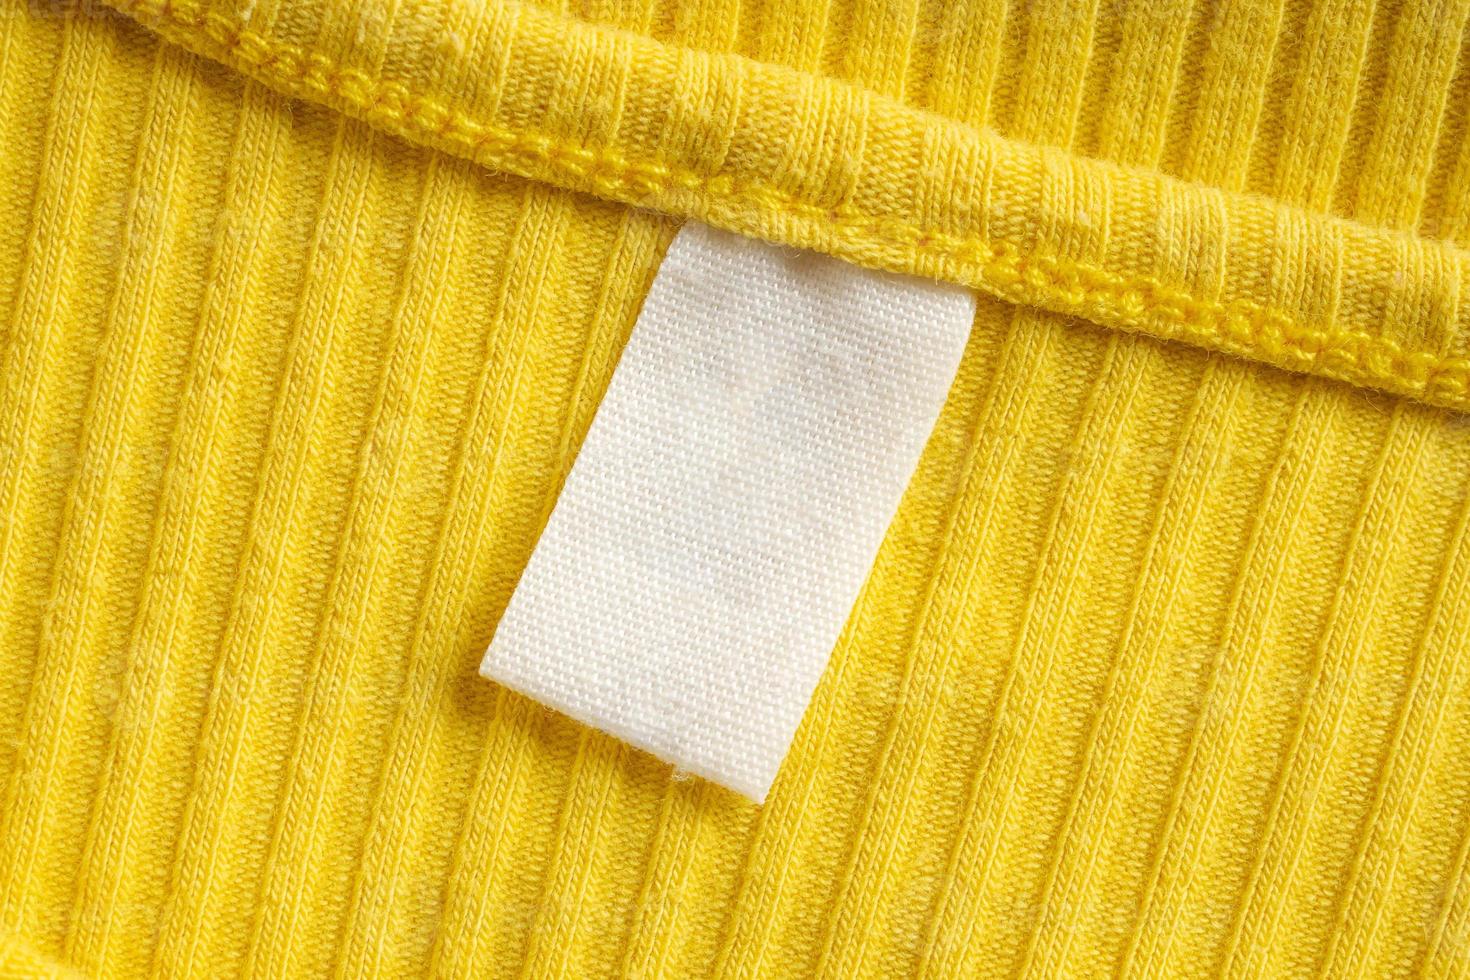 etiqueta de etiqueta de roupa em branco branca no novo fundo da camisa amarela foto